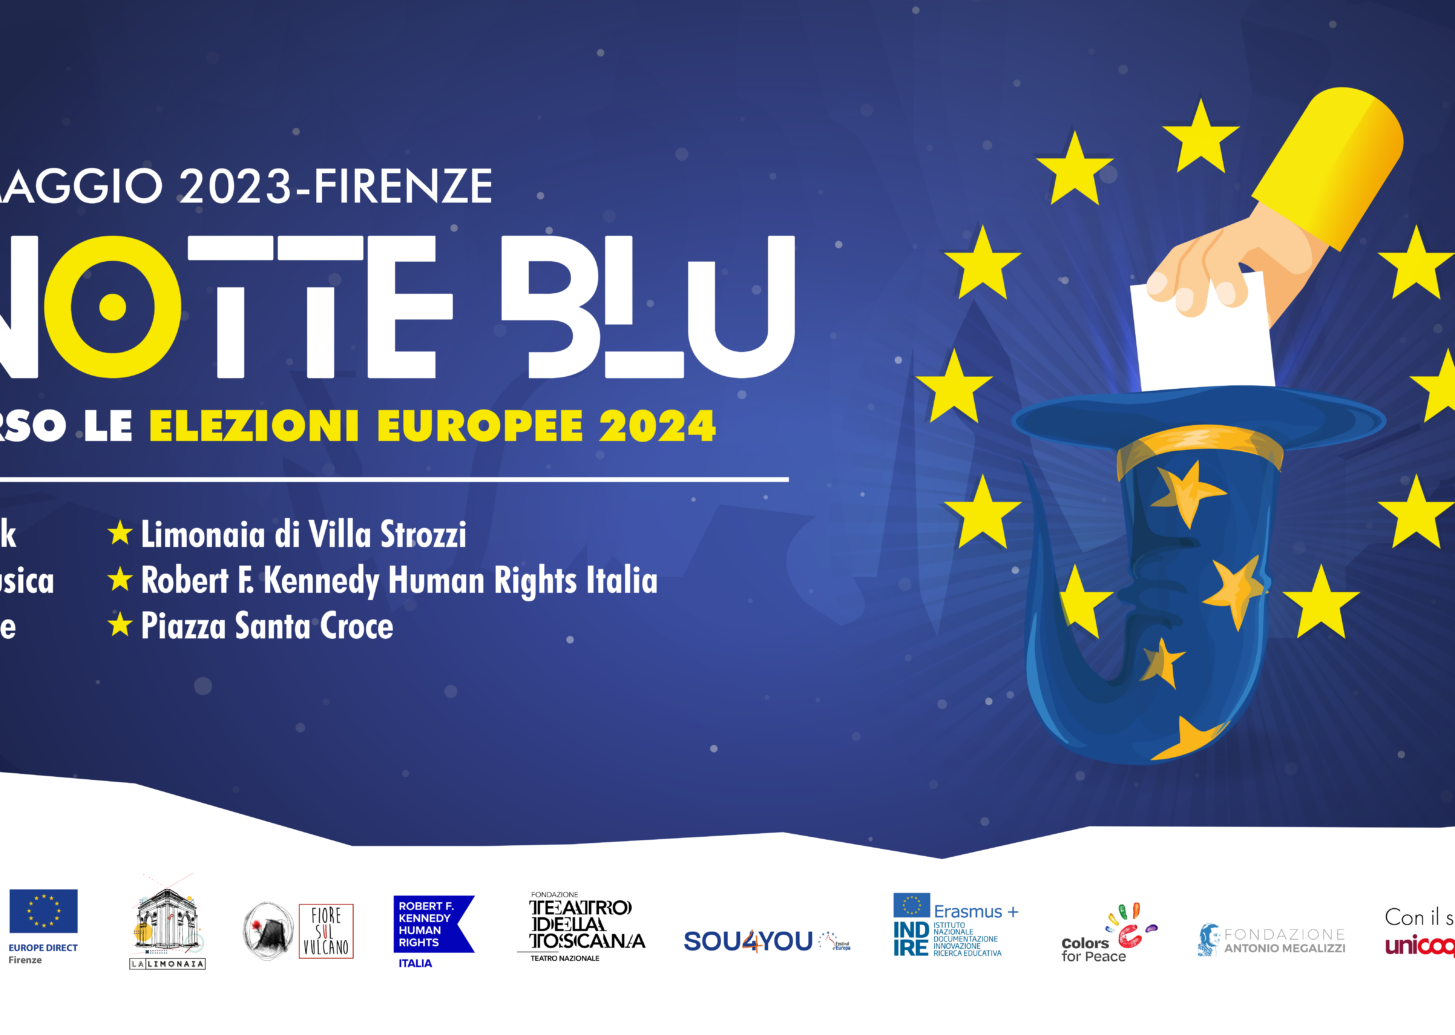 La Notte Blu 2023 – Tre workshop sulla cittadinanza europea aperti tutti